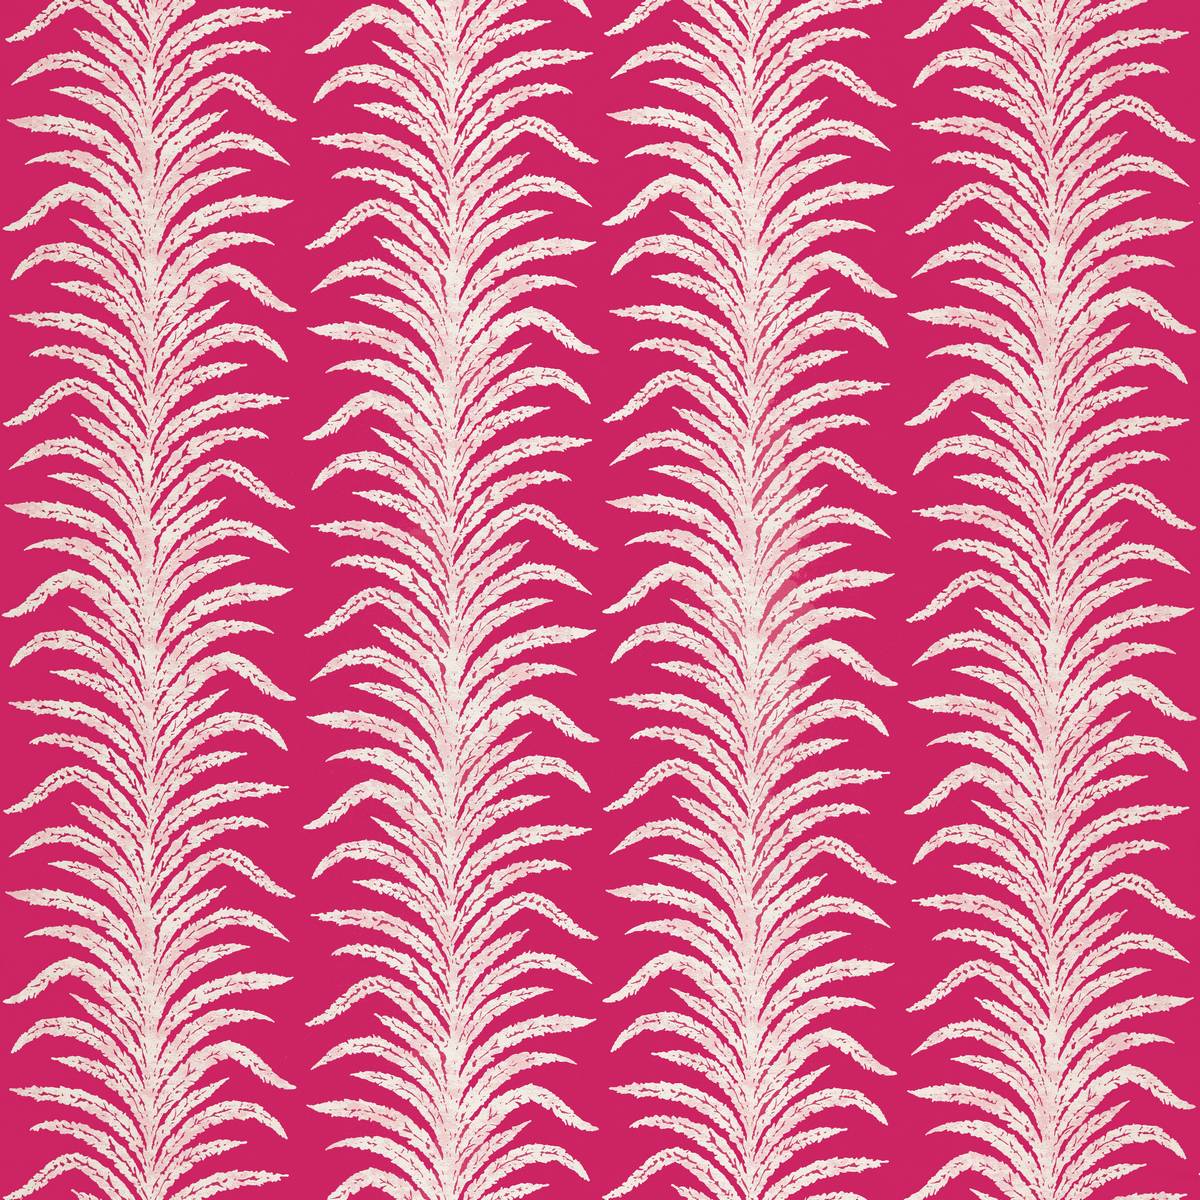 Tree Fern Weave Rhodera Fabric by Sanderson